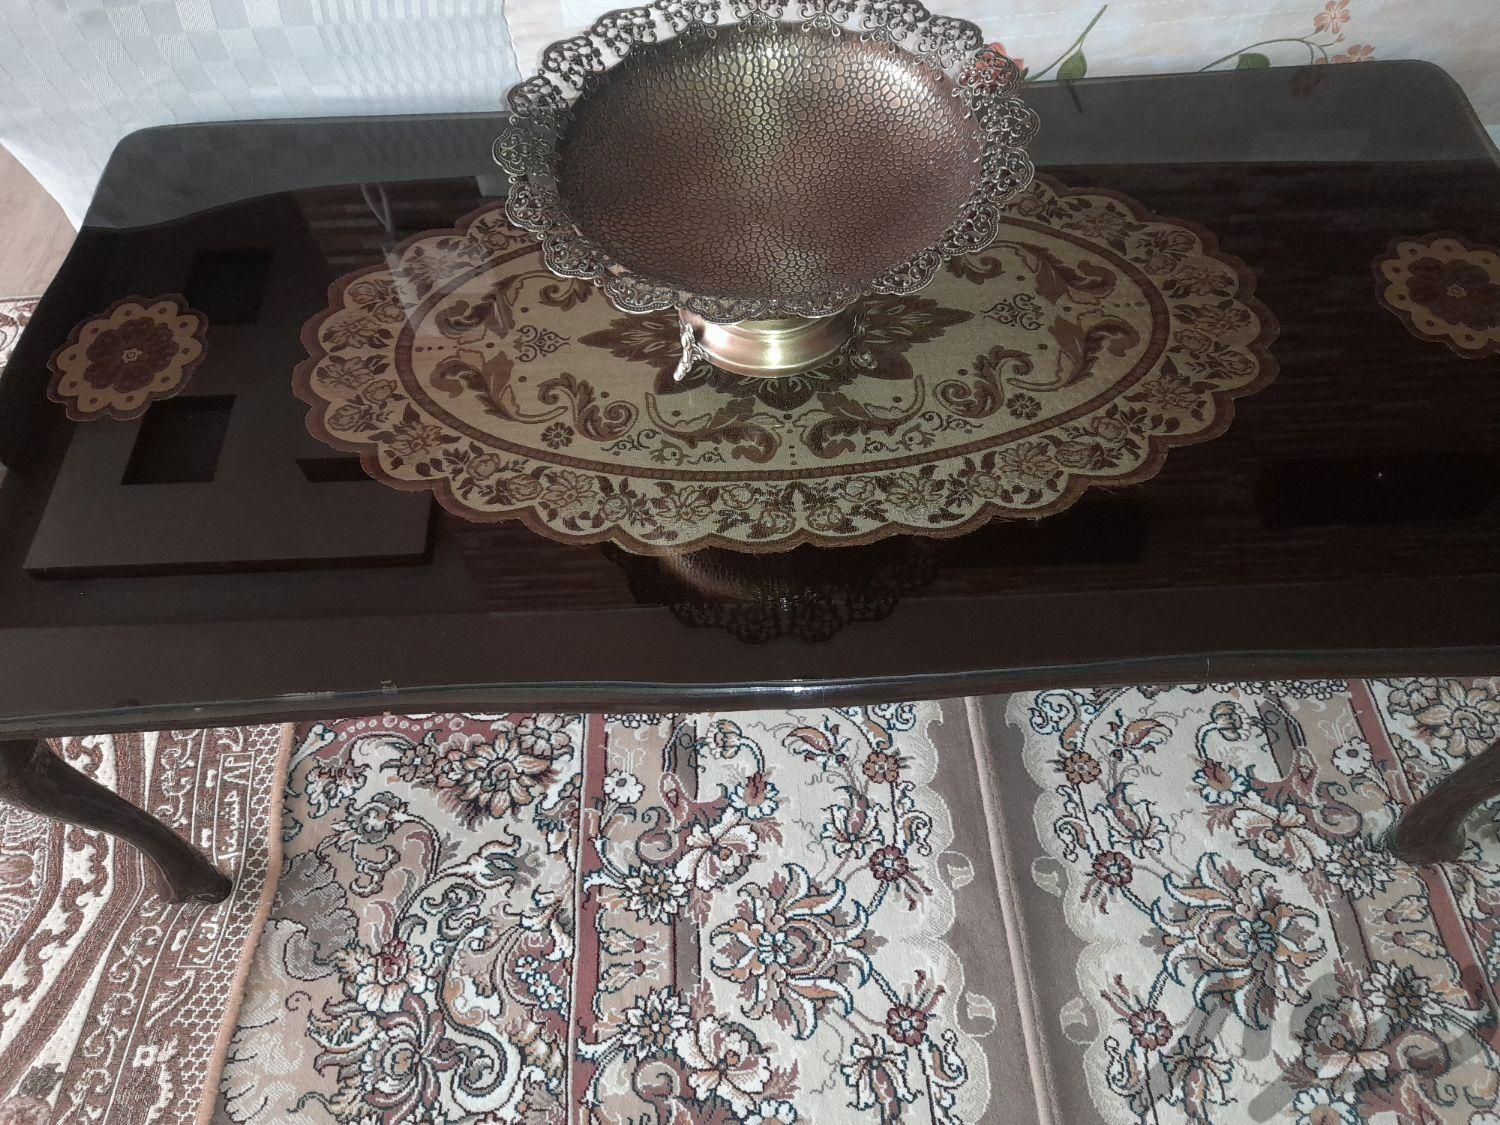 دودست میز بزرگ وعسلی|مبلمان خانگی و میزعسلی|اصفهان, راران|دیوار